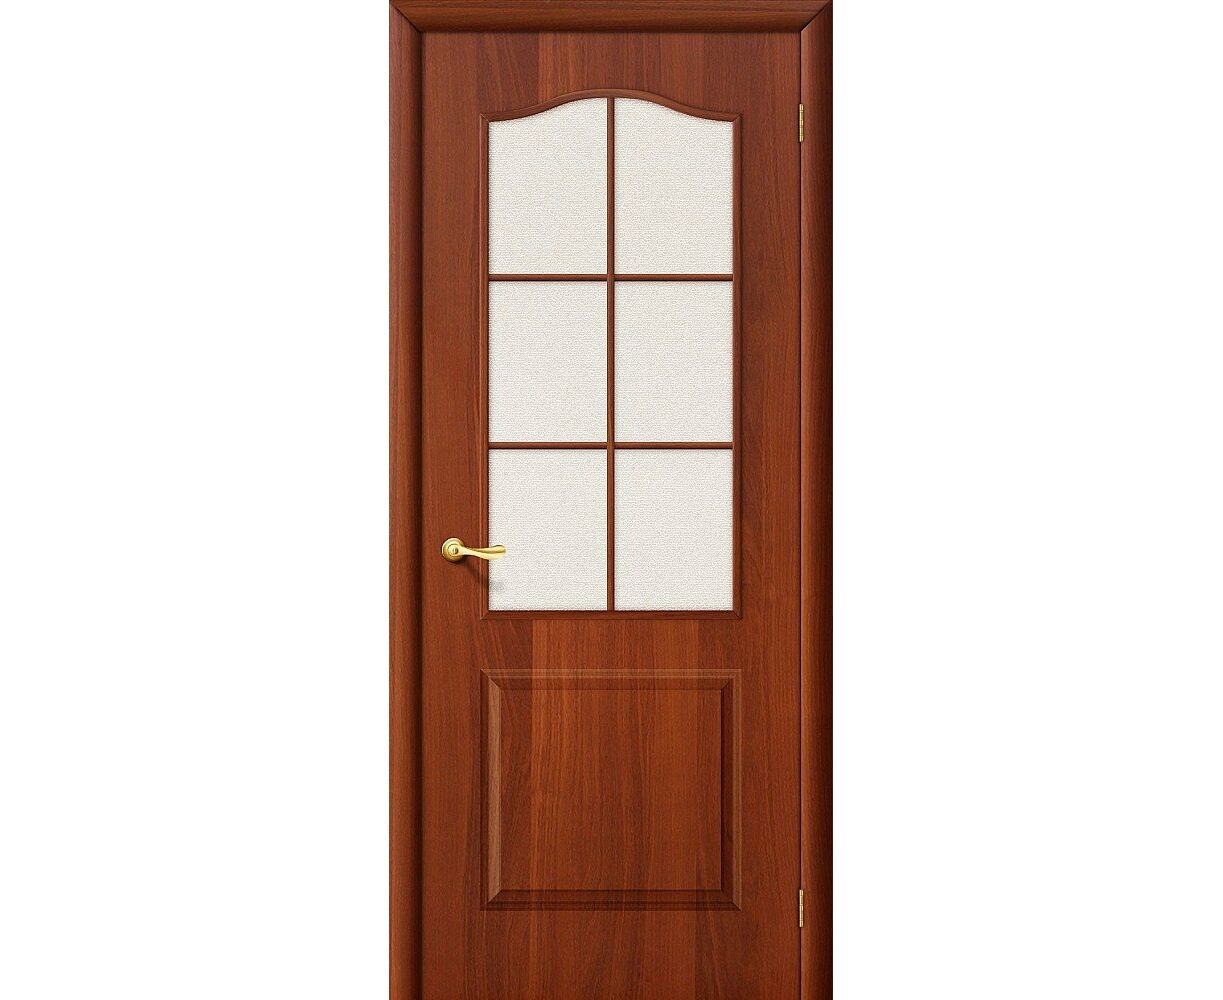 Купить межкомнатные двери в красноярске недорого. Дверь Браво Симпл 13. М7 т-06 (темный лак)(200*60). Браво межкомнатная дверь из массива м7 светлый лак.